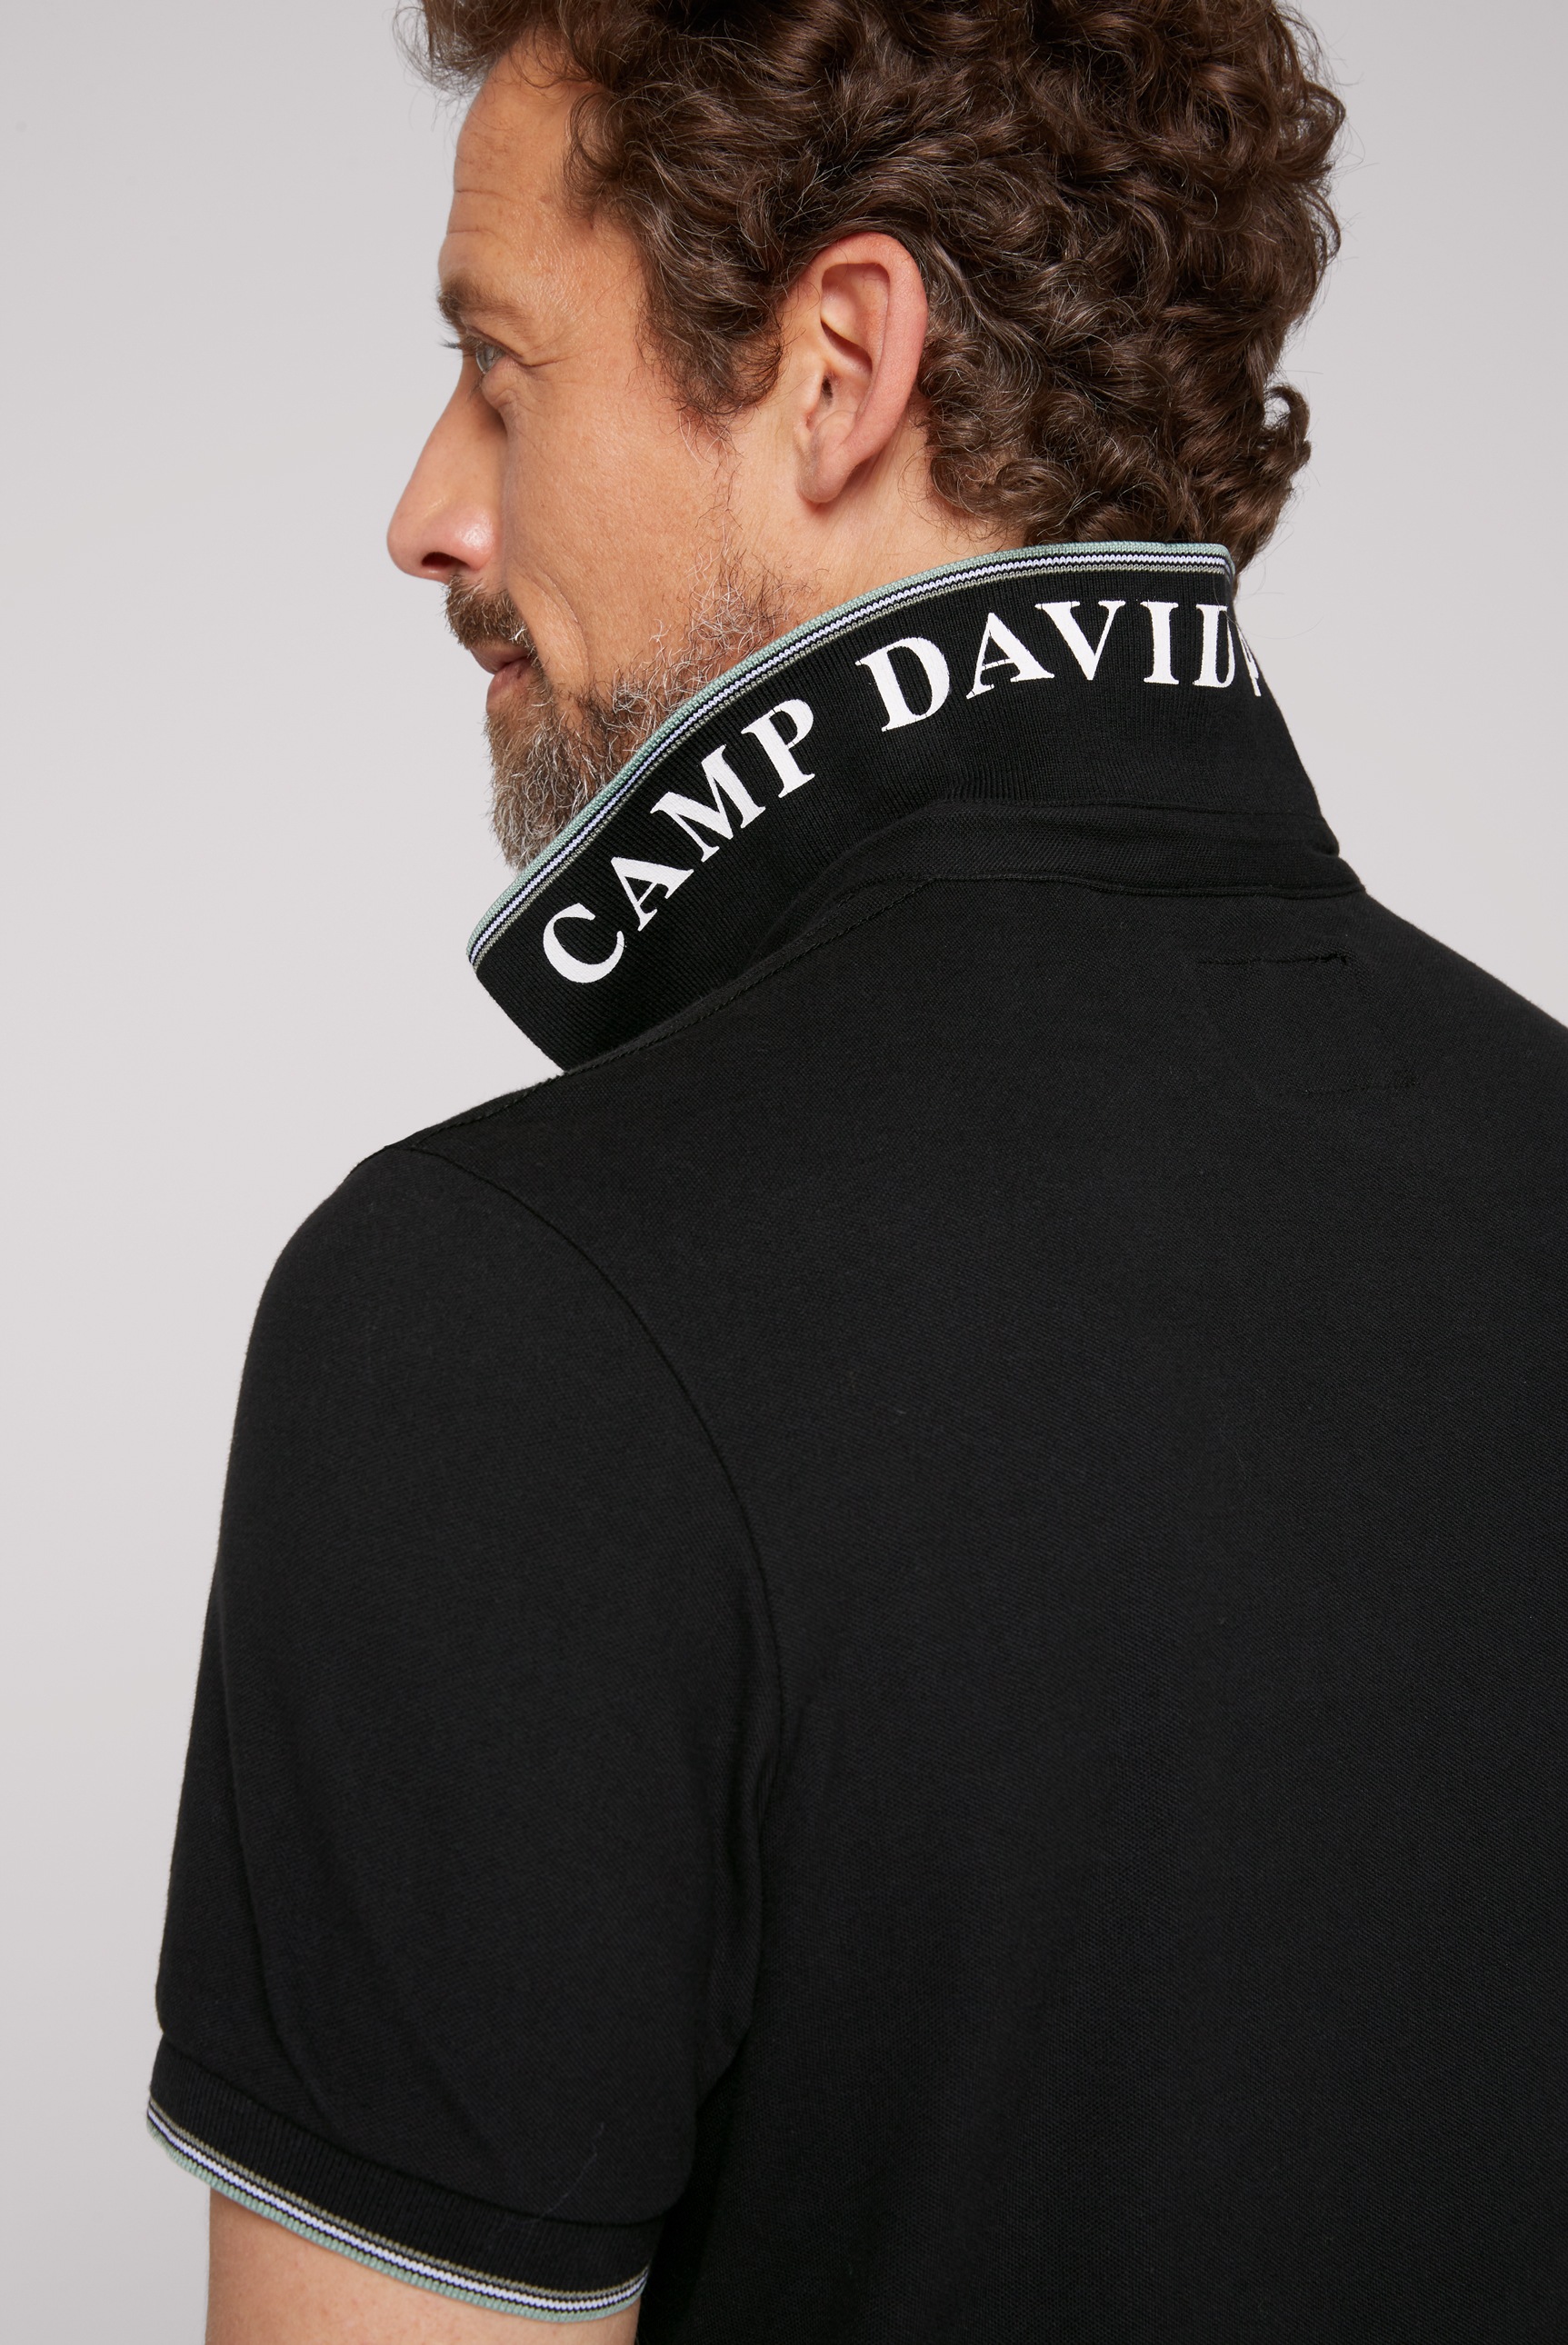 Black Friday CAMP Poloshirt, | BAUR DAVID aus Bio-Baumwolle